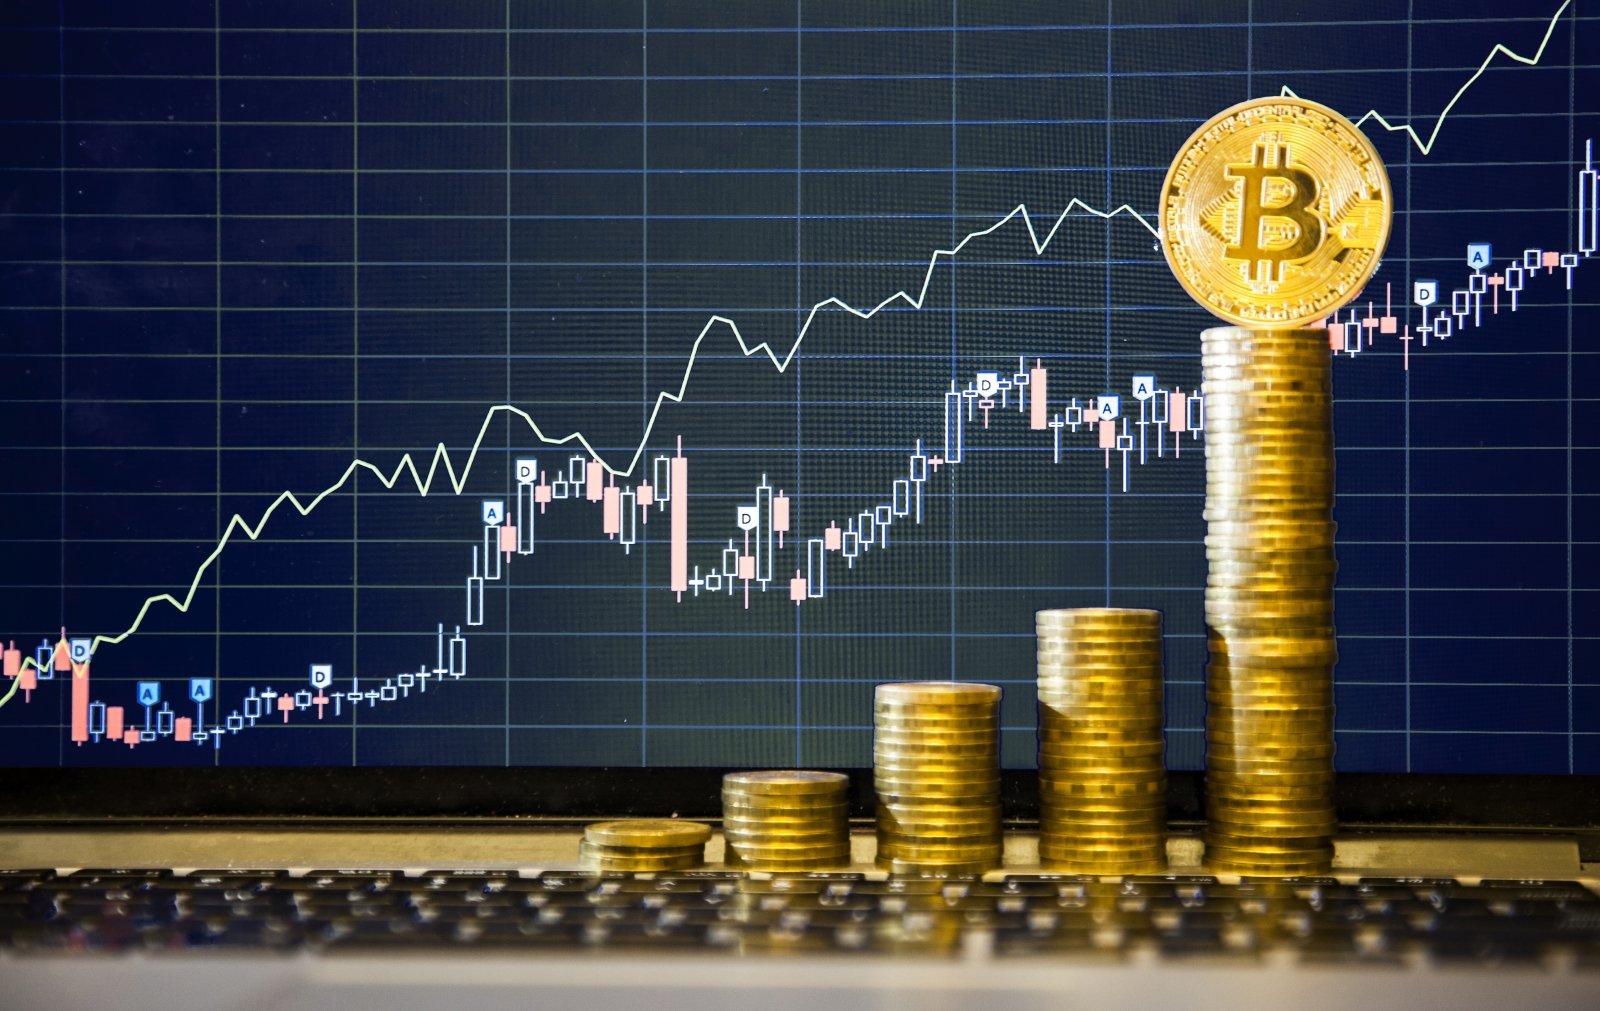 bitkoinų infliacija coinbase siuntimo bitcoin mokestis